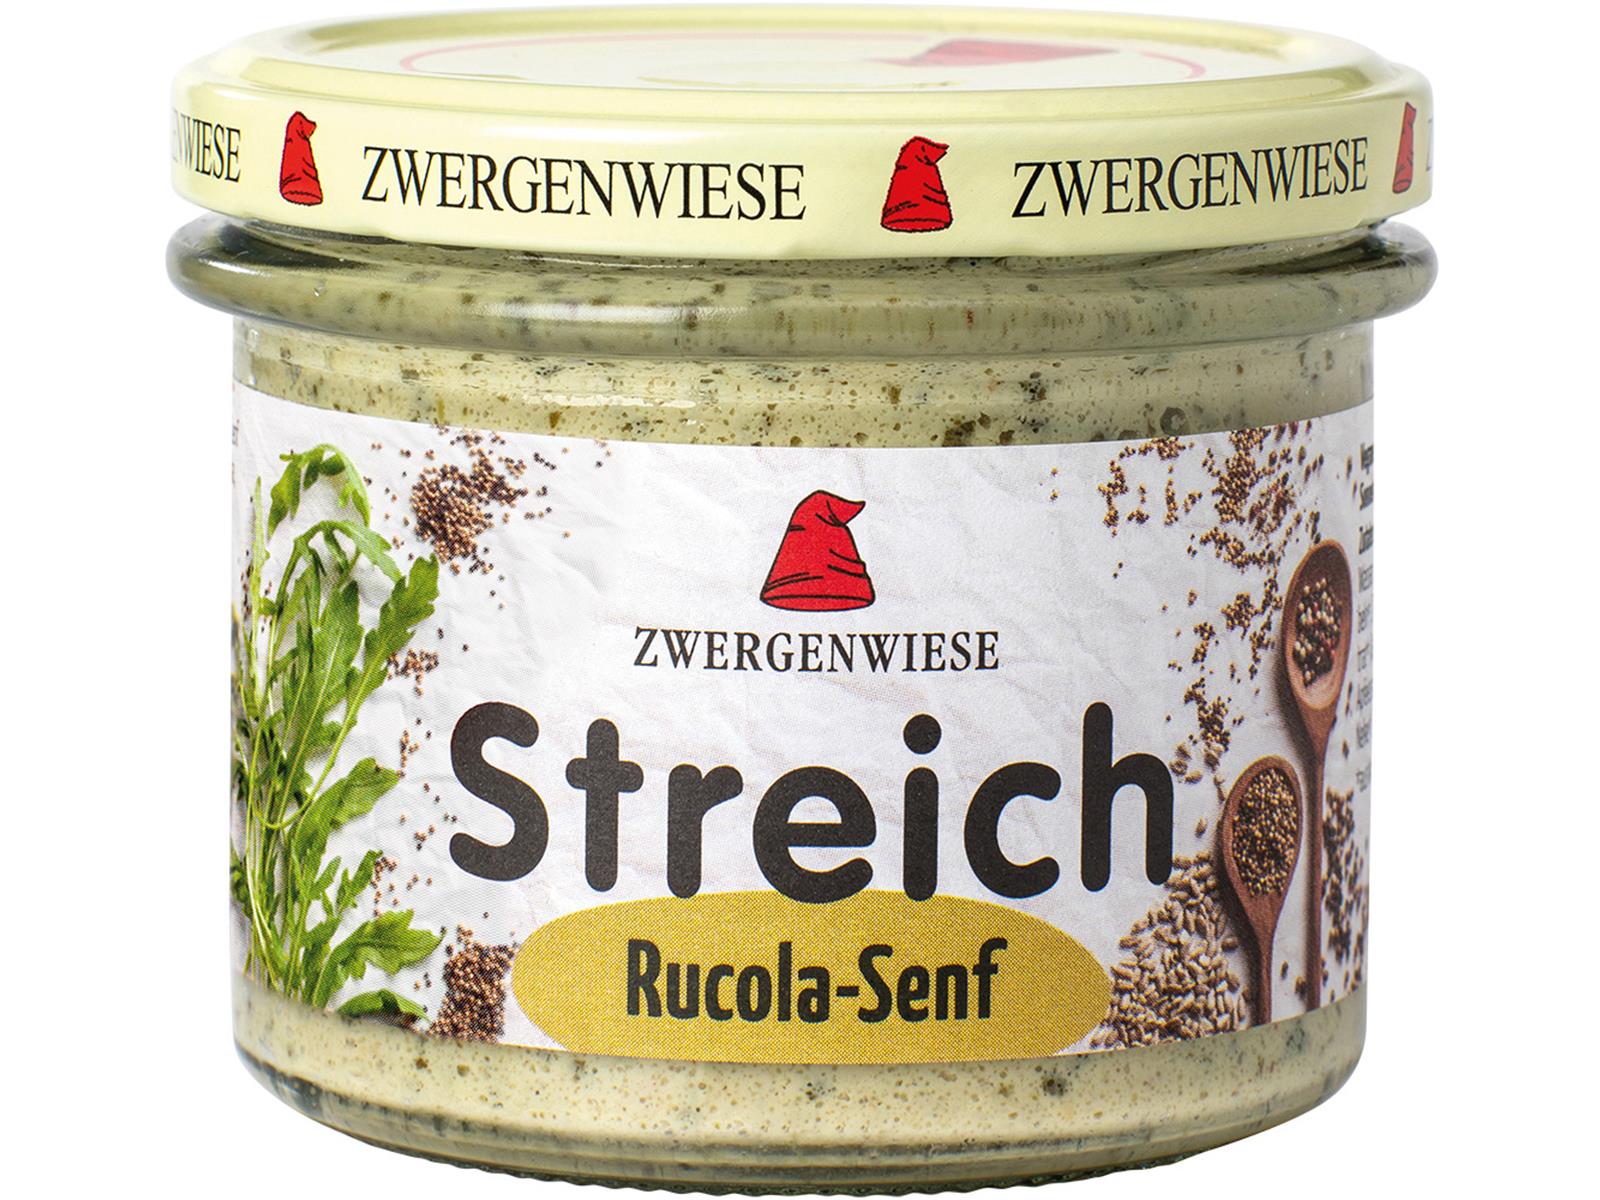 Zwergenwiese Rucola-Senf Streich 180g